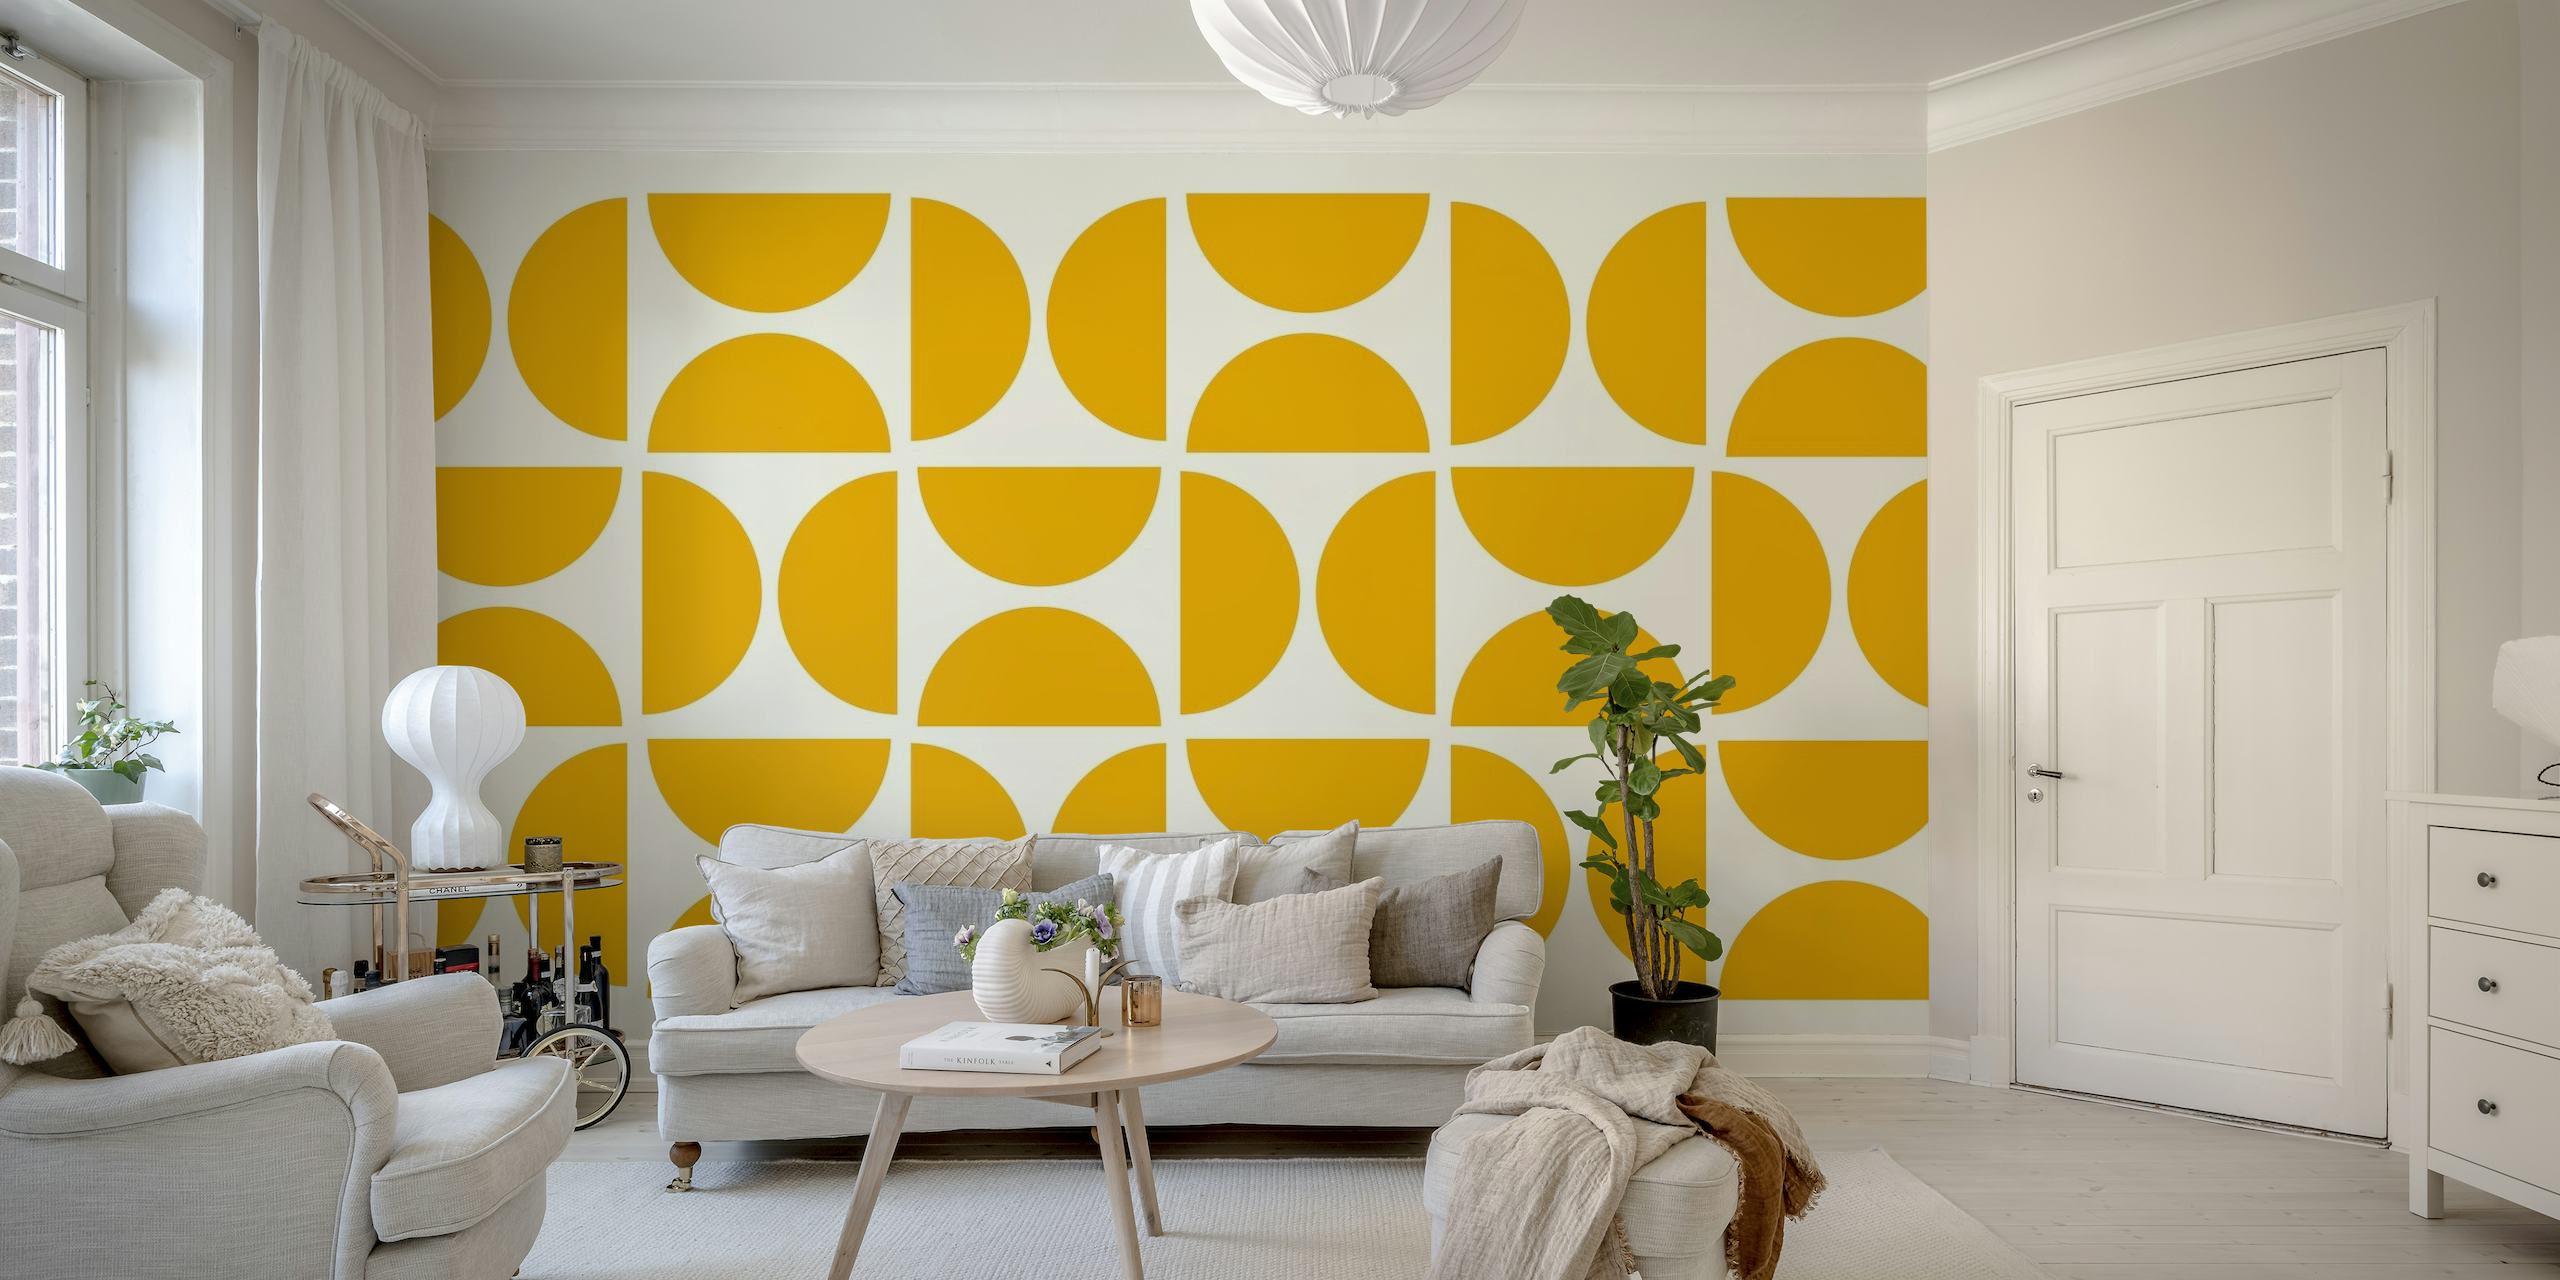 Yellow Bauhaus wallpaper